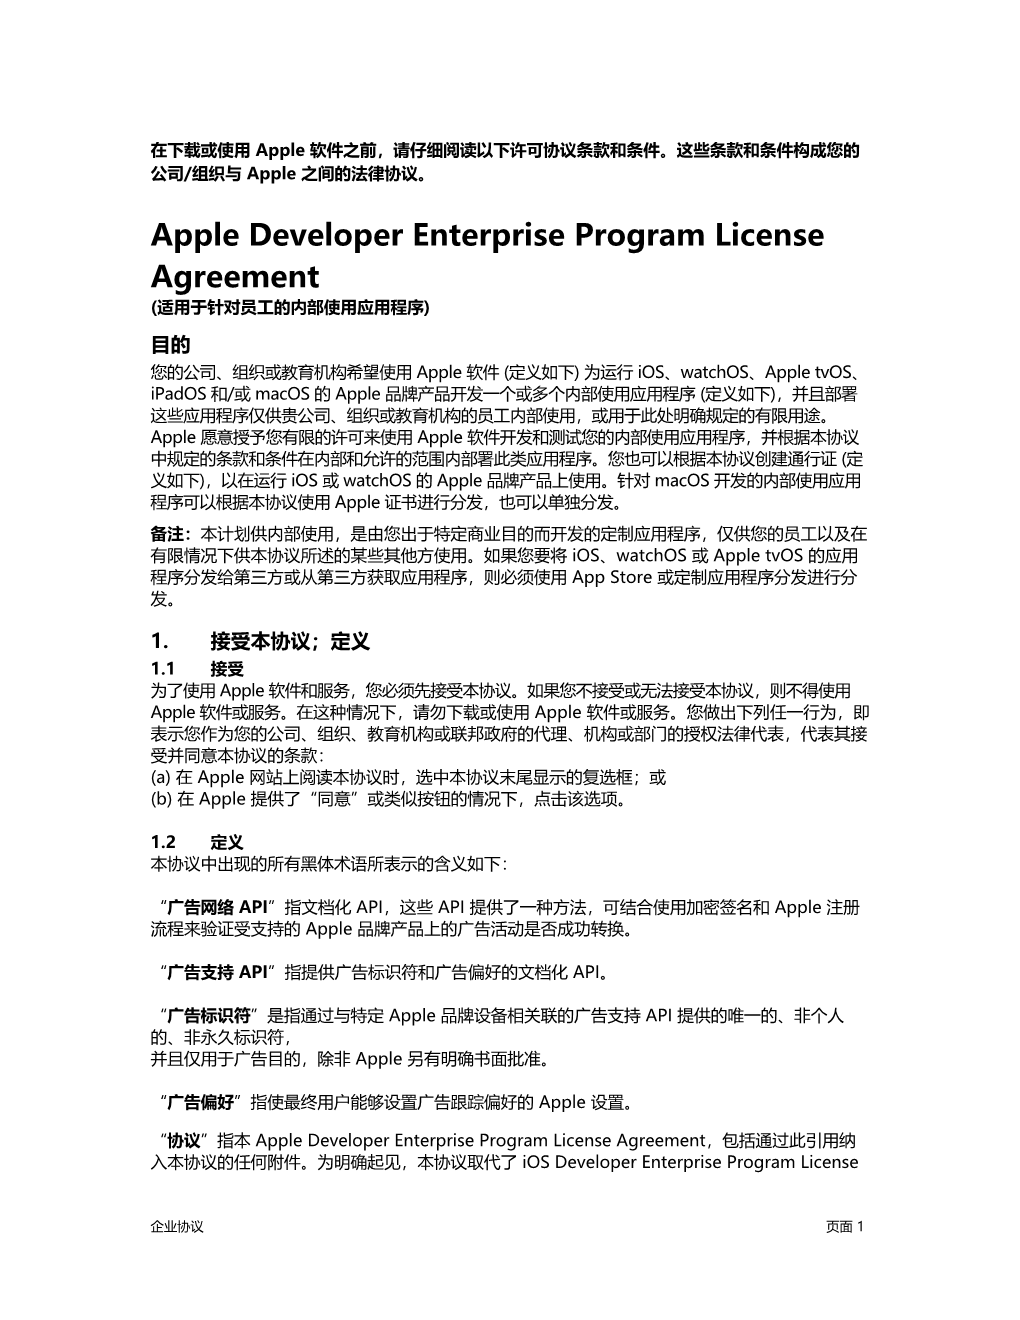 Apple Developer Enterprise Program License Agreement